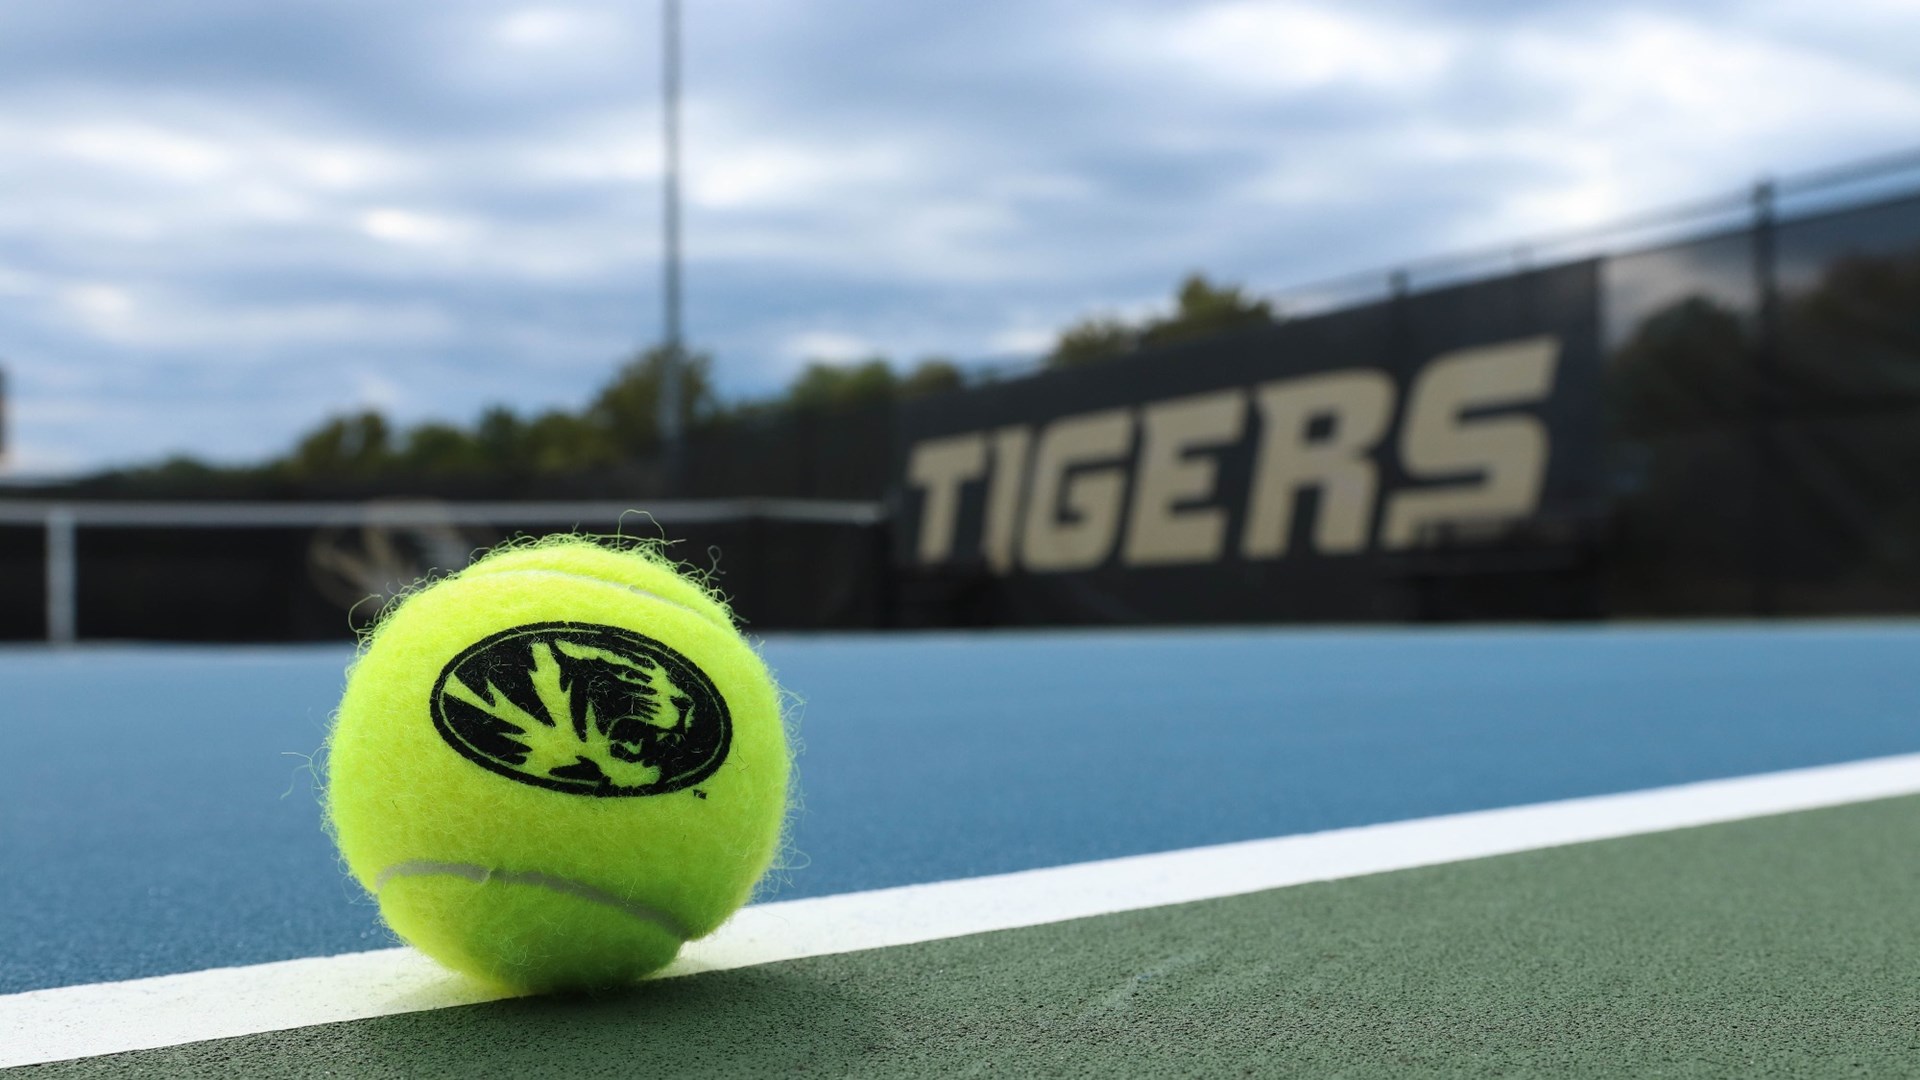 Mizzou Tigers vs. Kansas City Kangaroos at Green Tennis Center in Columbia, MO, on Friday, September 18, 2022. John Gronski/Mizzou Athletics